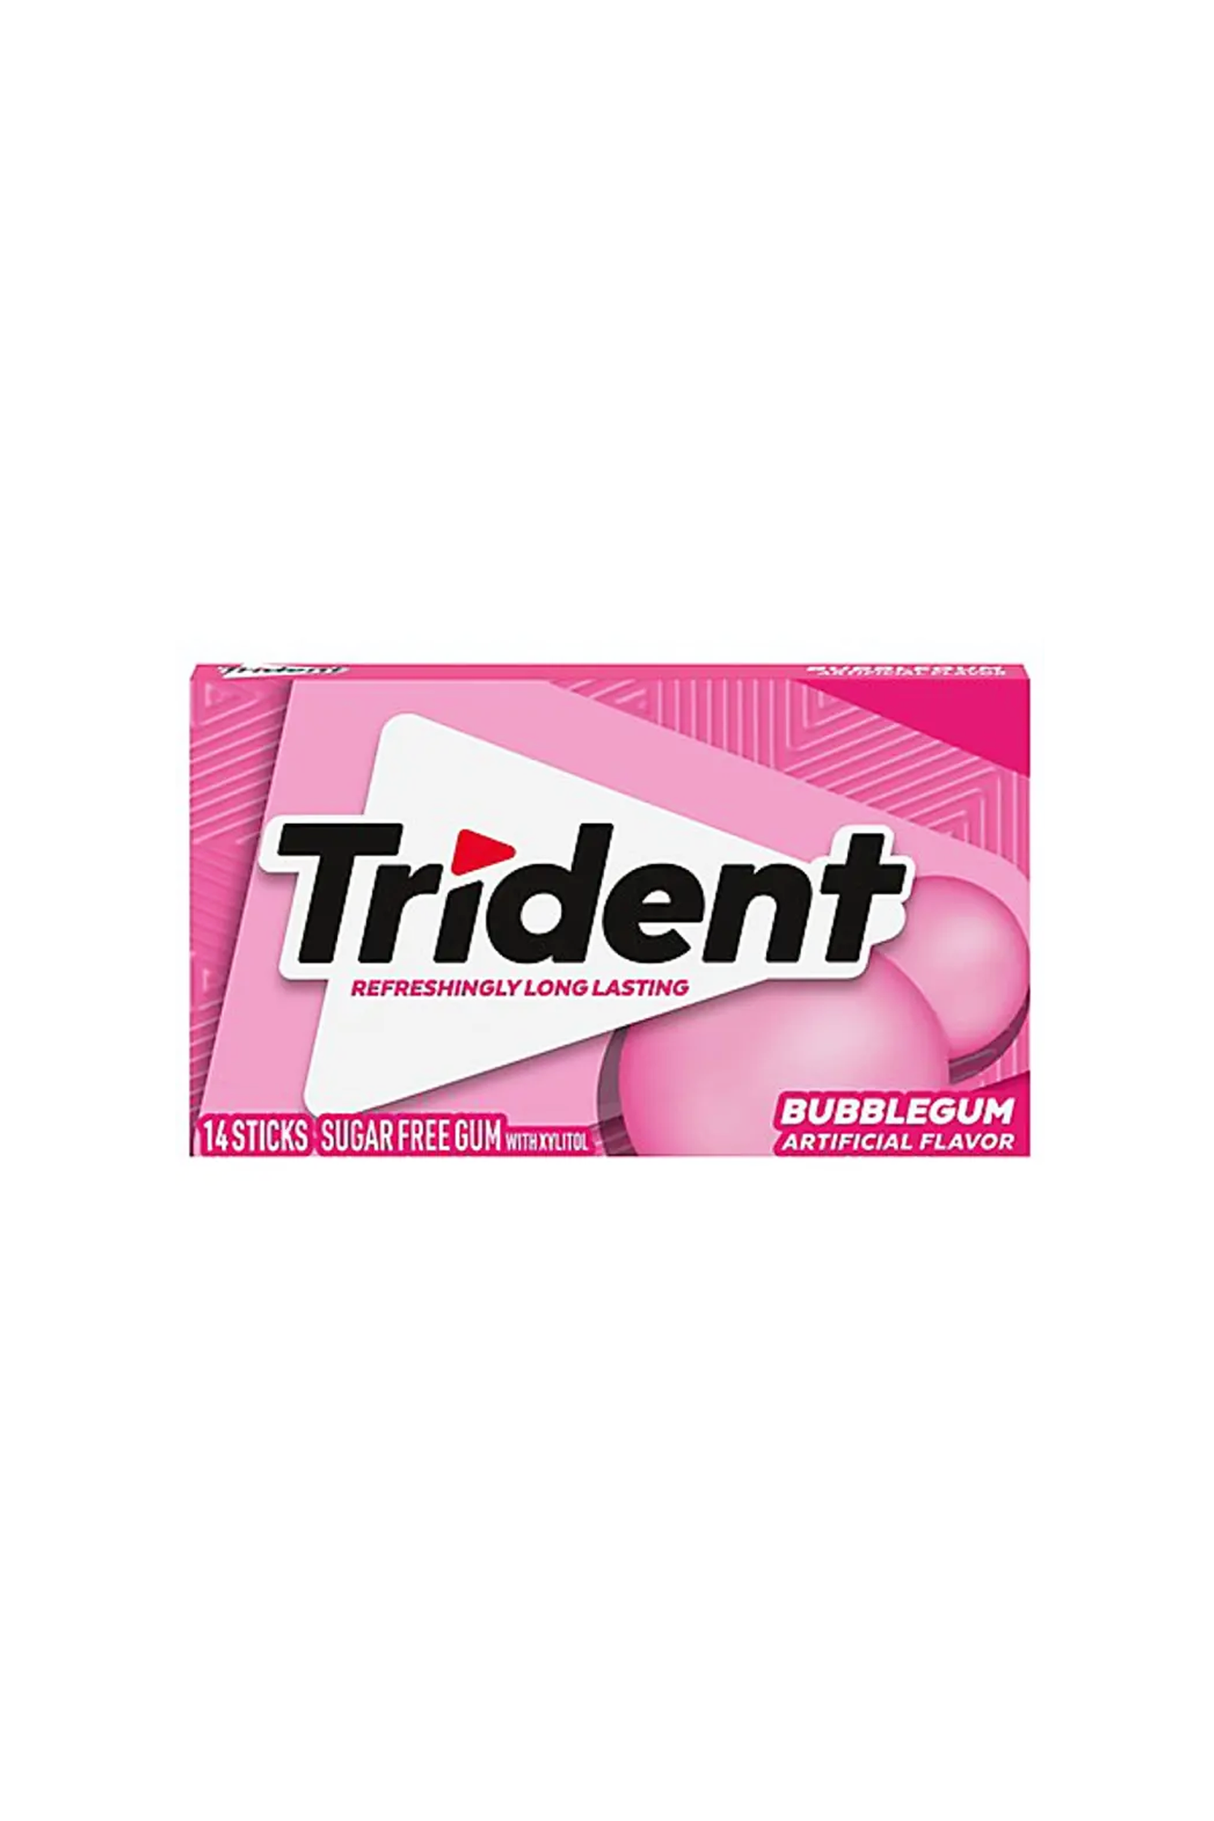 trident gum bubblegum 14 sticks sugar free